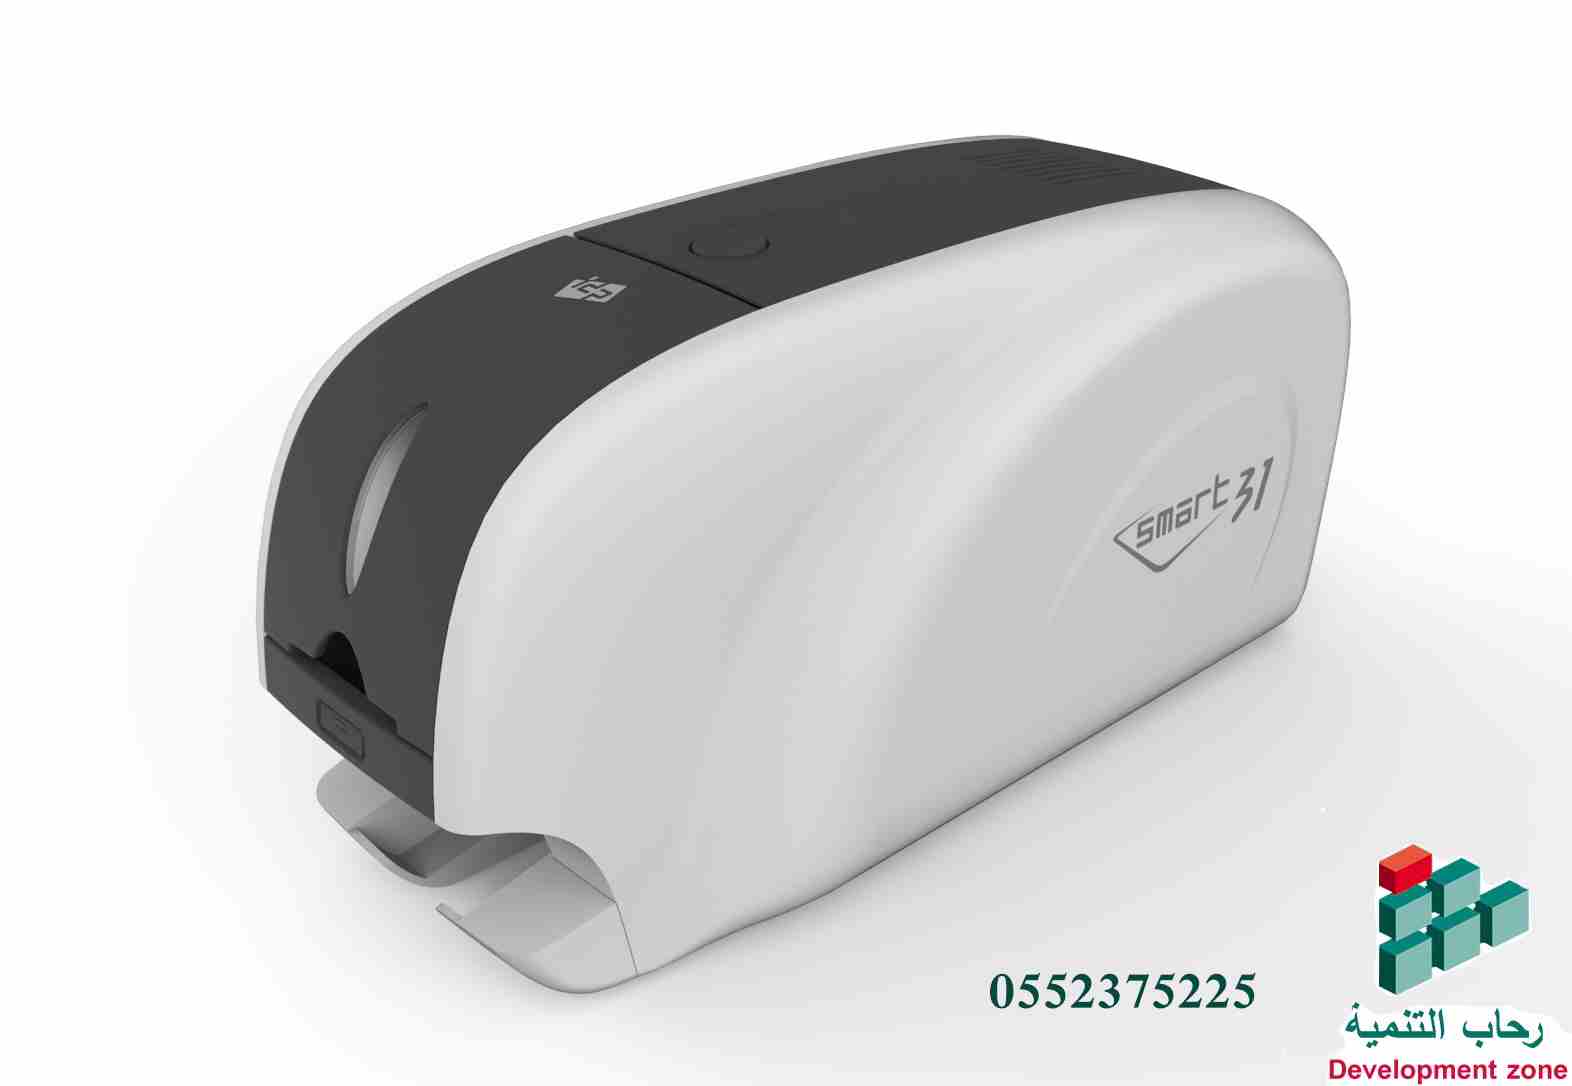 أجهزة-الكترونية-أخرىعروض ع طابعة كروت بلاستيكية
ID card printers
1- Smart 31S Single...